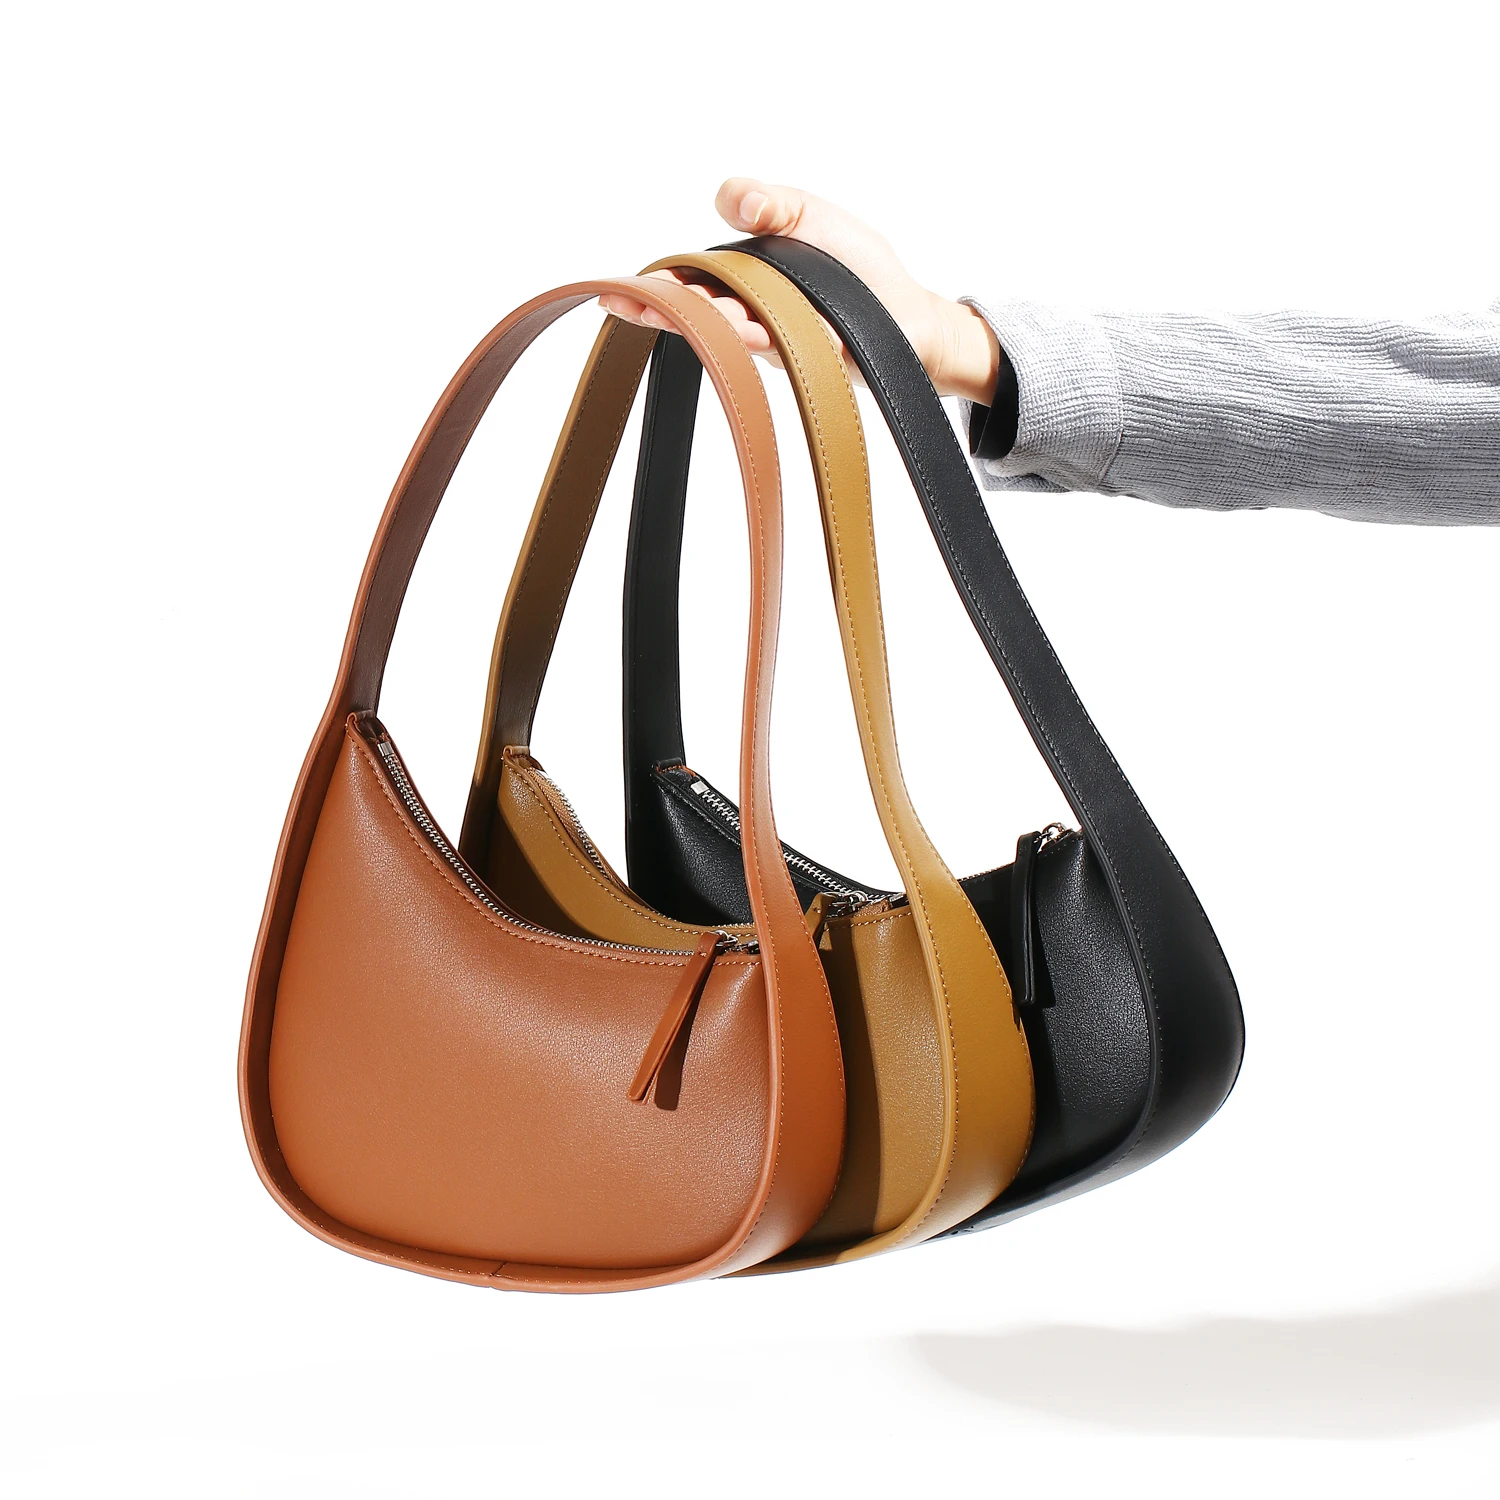 Jindailin Genuine Leather Half Moon Ladies Purses And Handbags Solid ...